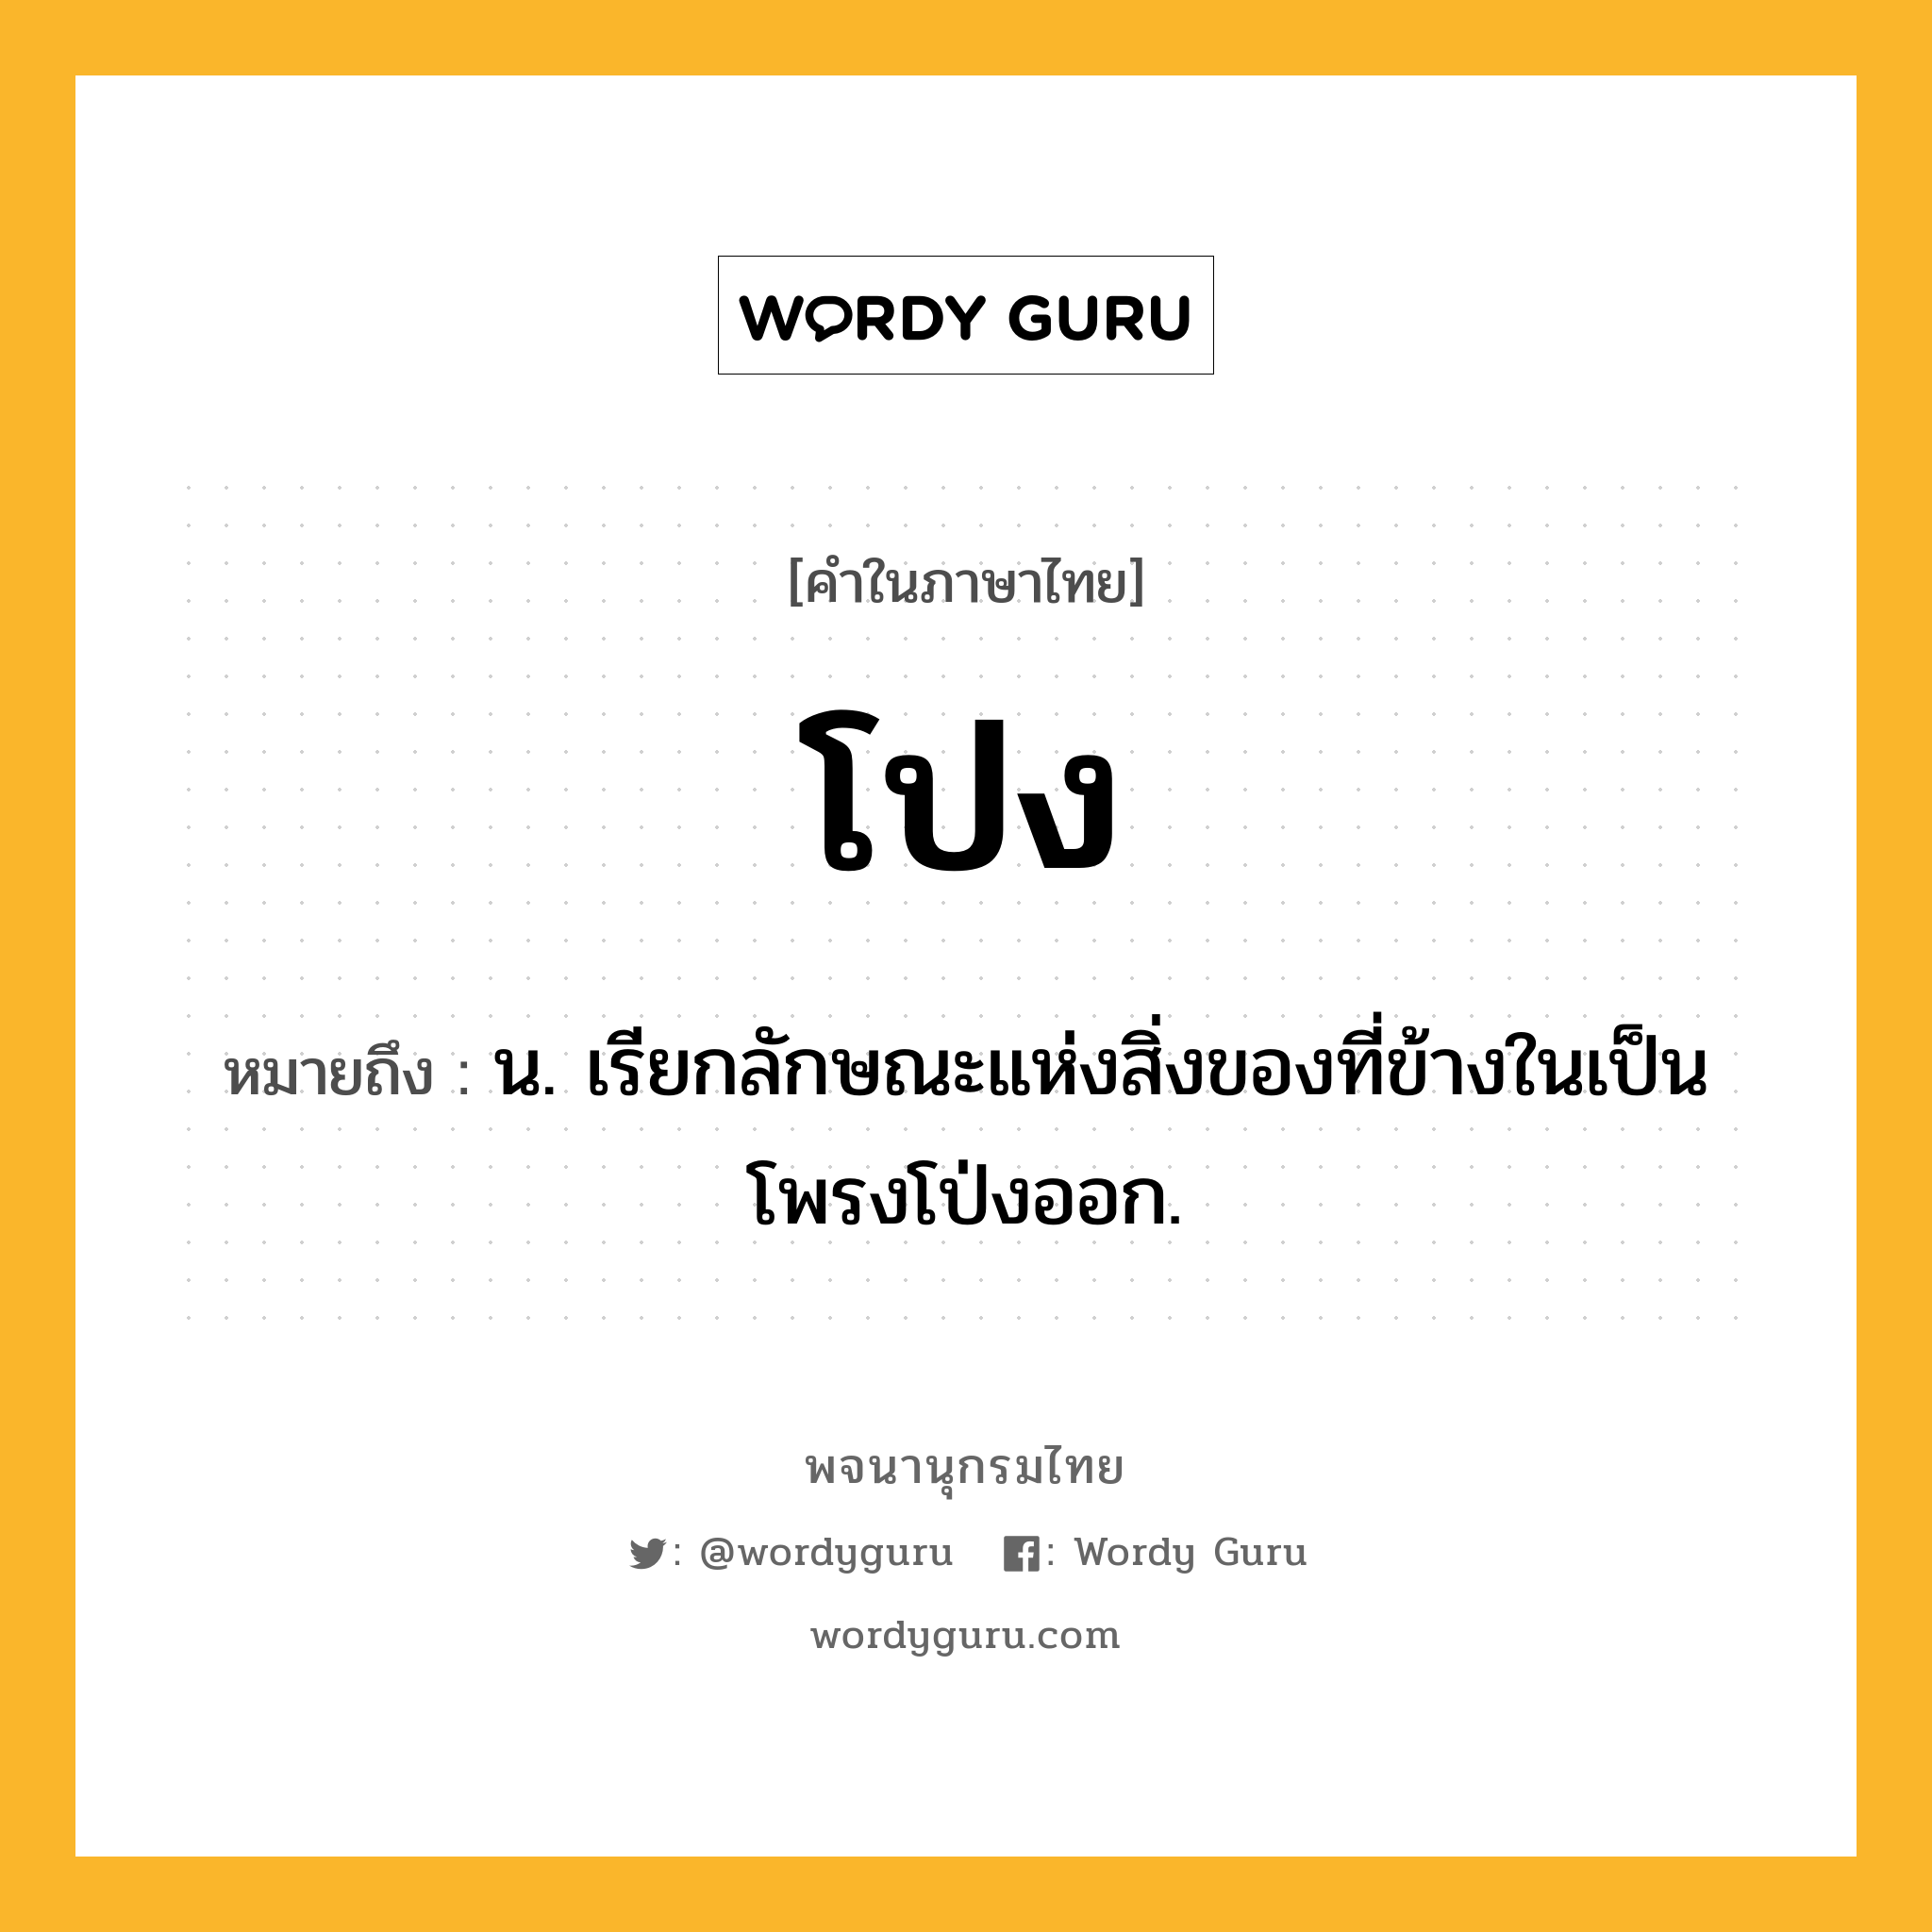 โปง หมายถึงอะไร?, คำในภาษาไทย โปง หมายถึง น. เรียกลักษณะแห่งสิ่งของที่ข้างในเป็นโพรงโป่งออก.